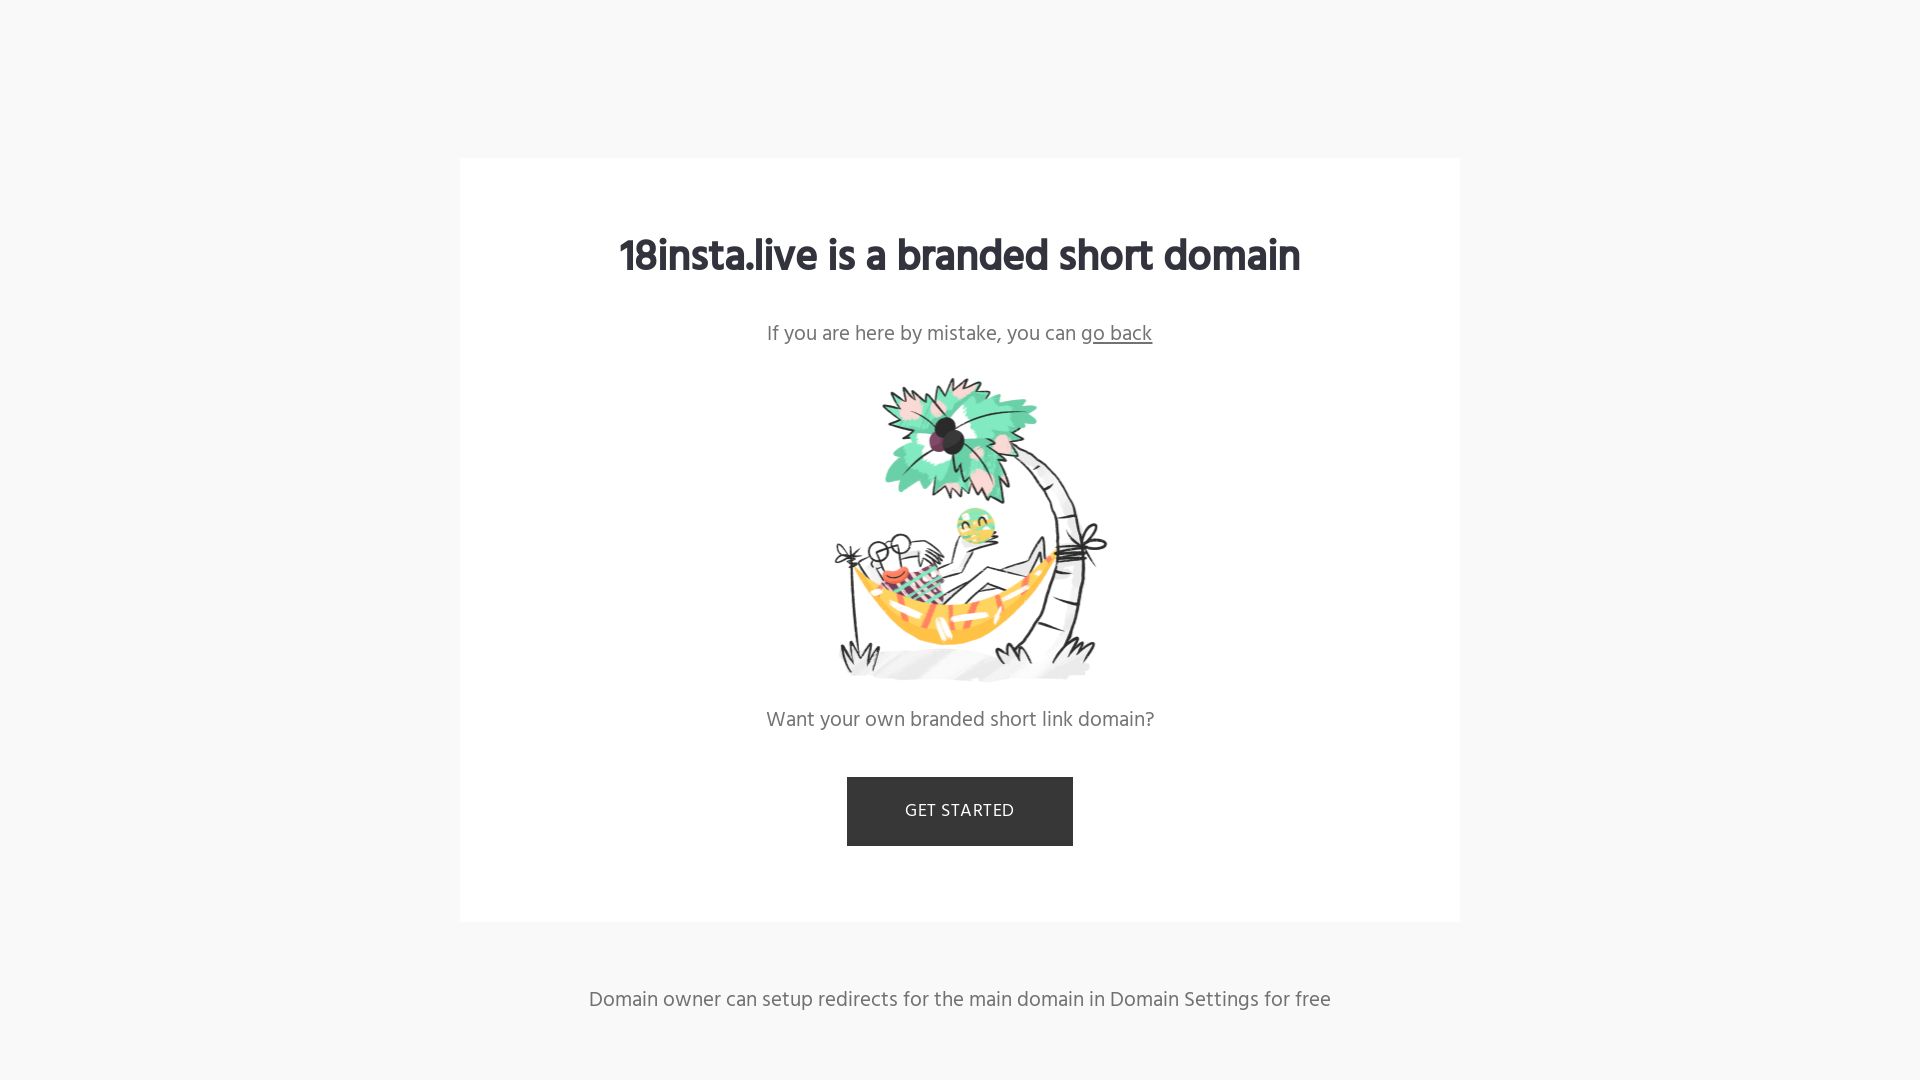 Website status 18insta.live is   ONLINE